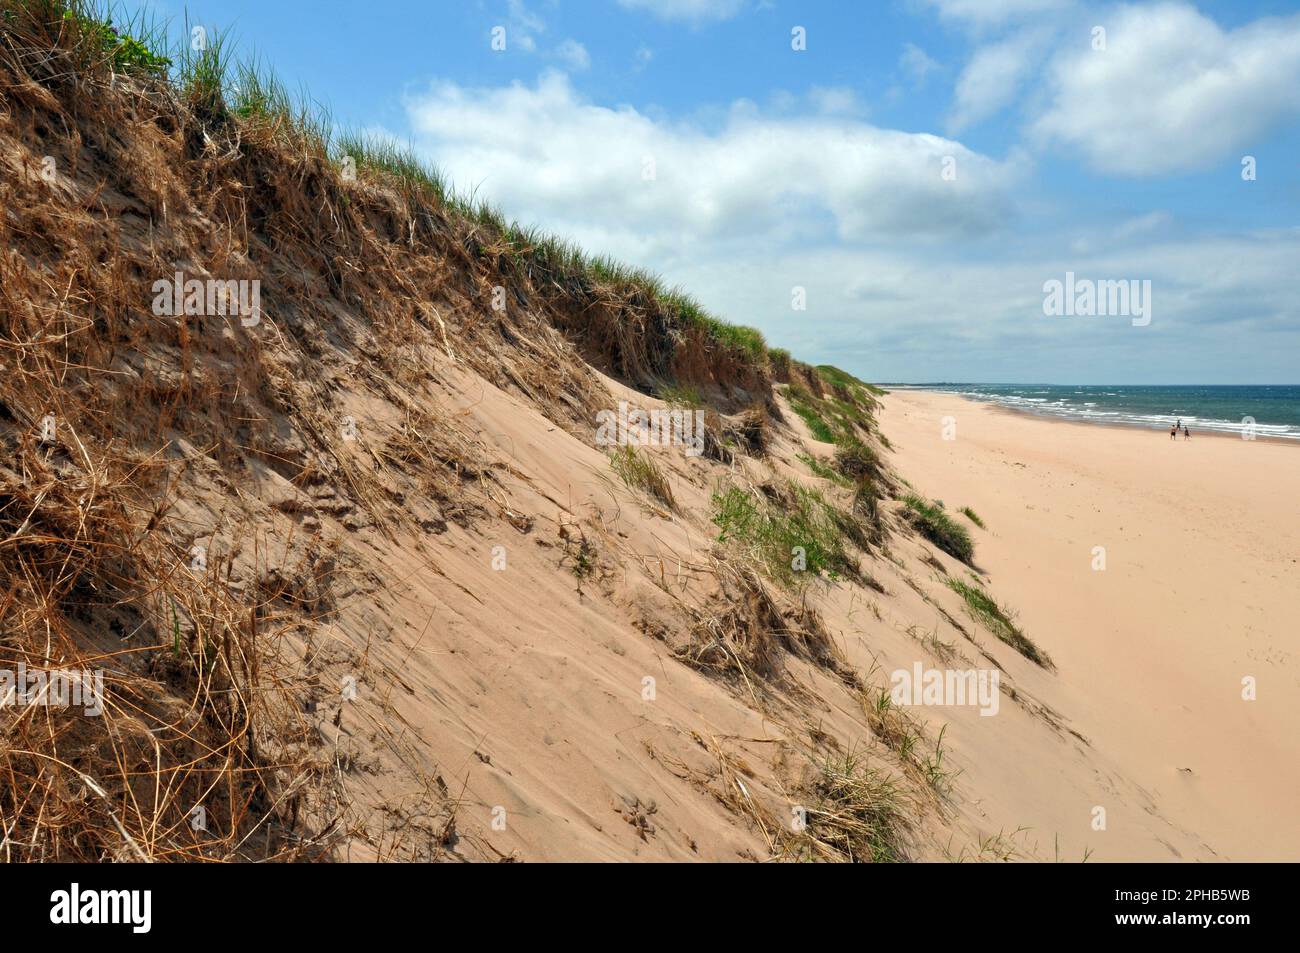 Grasbedeckte Sanddünen bieten einen Blick auf Greenwich Beach und den Golf von St. Lawrence im Prince Edward Island National Park in Kanada. Stockfoto